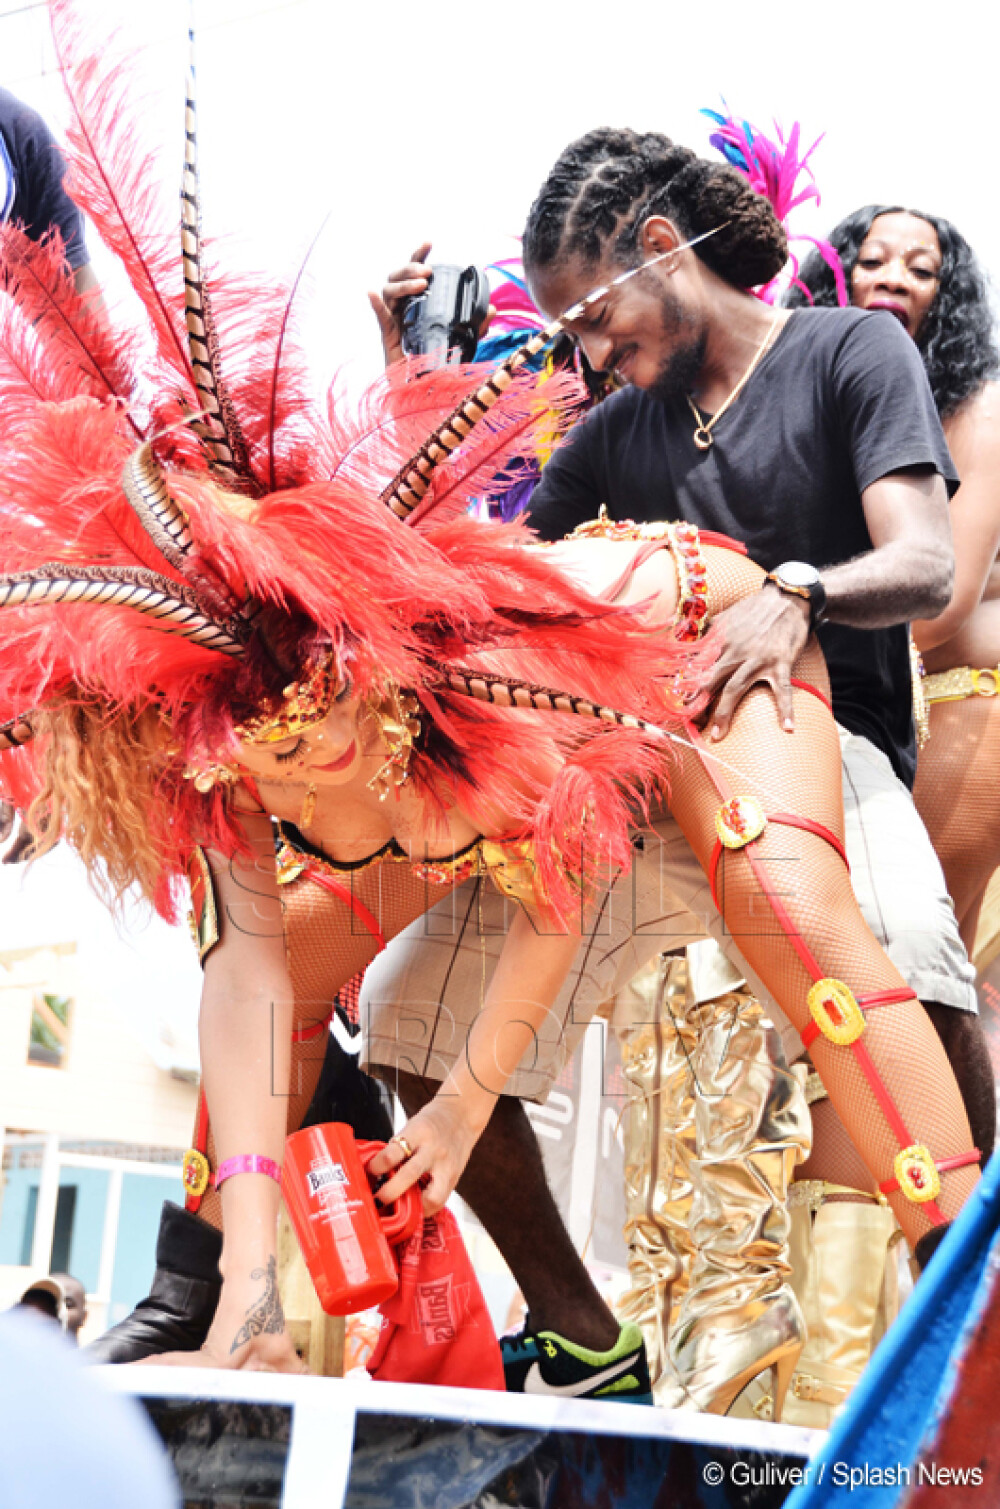 Fara inhibitii. Rihanna incita imaginatia barbatilor, la carnavalul din Barbados. GALERIE FOTO - Imaginea 4